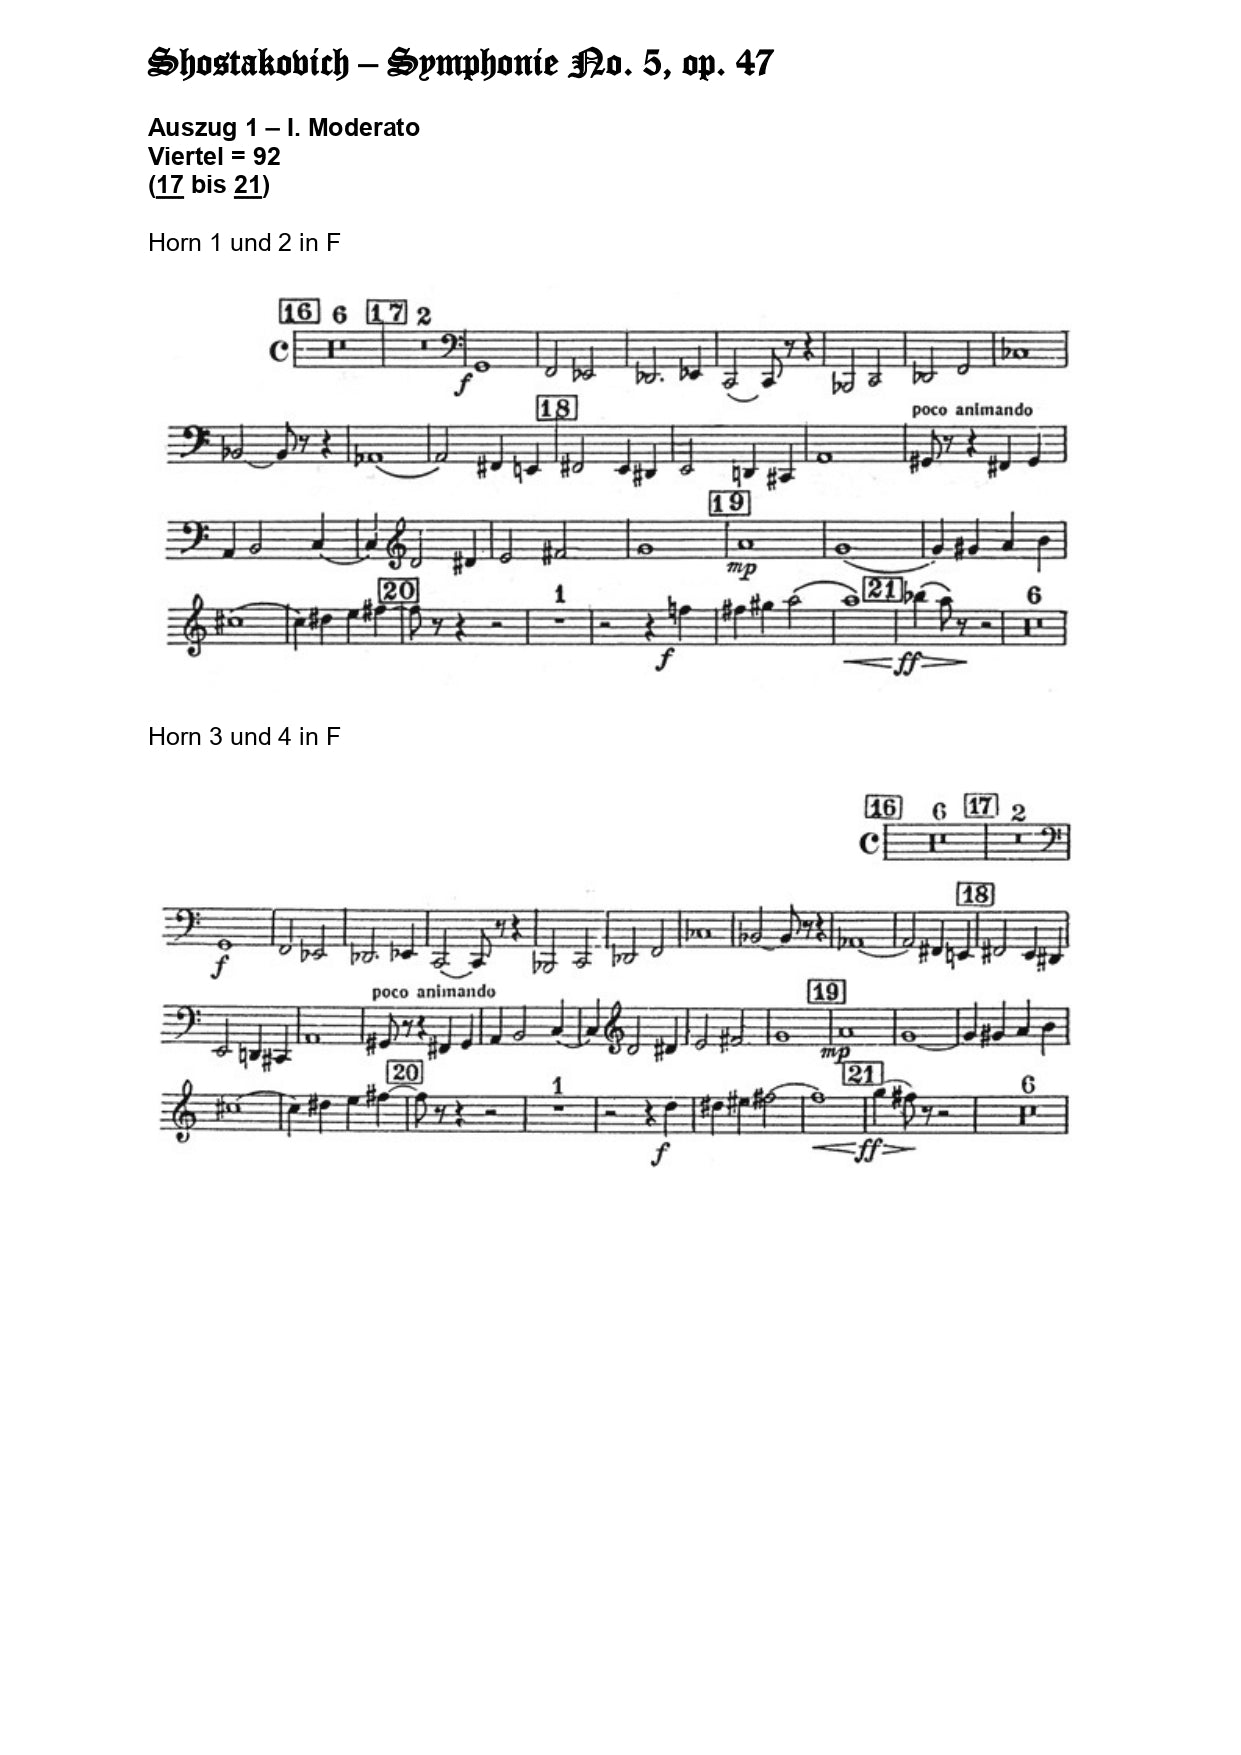 Orchester Studie - Dimitri Schostakovich - Horn 1,2,3,4